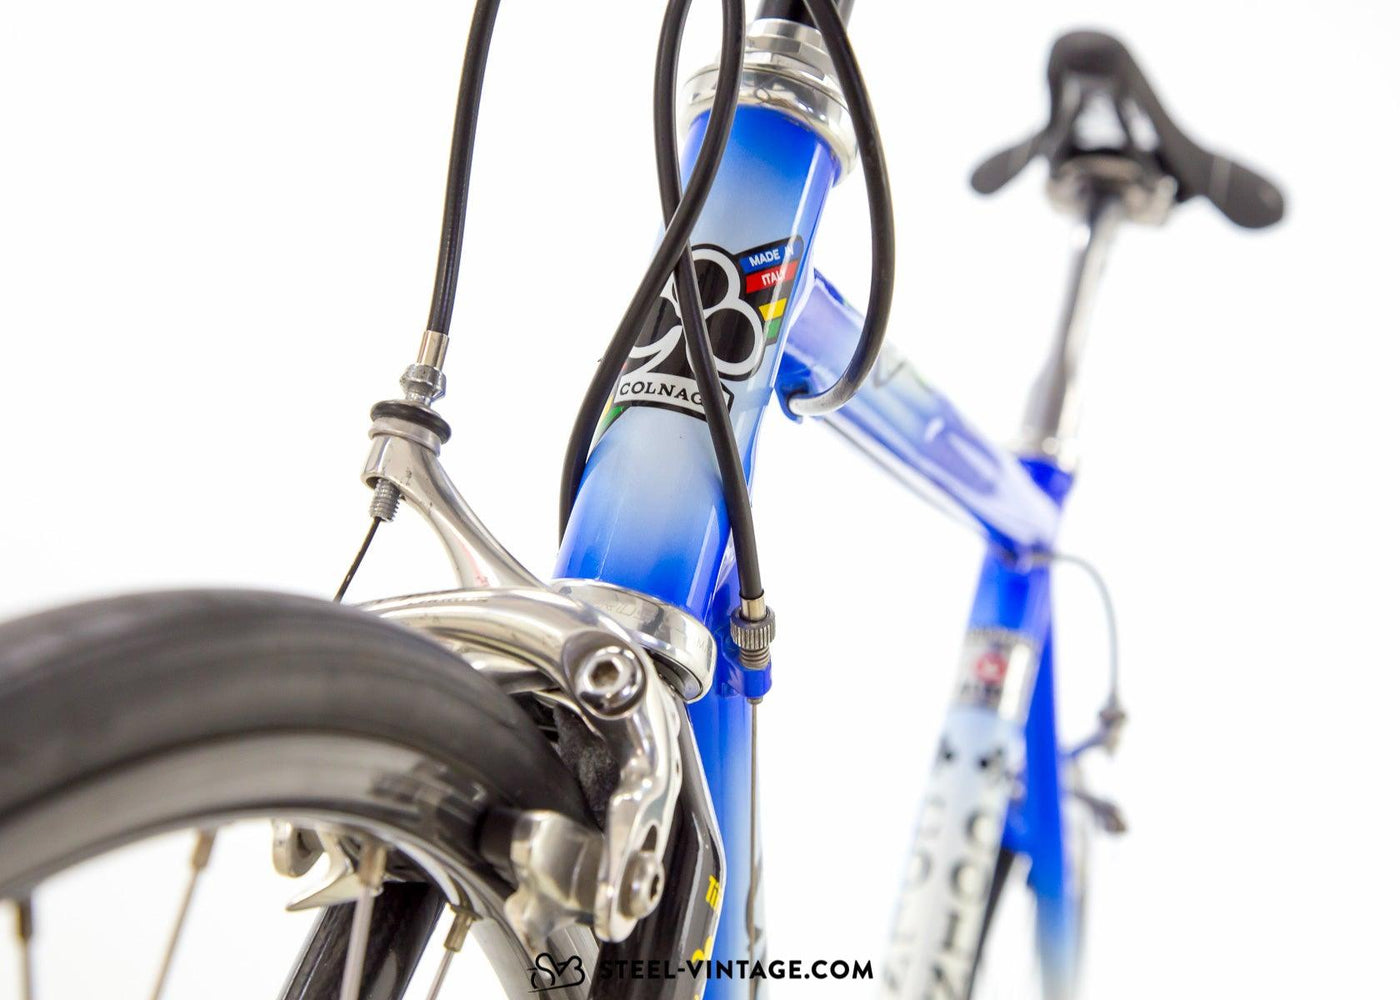 Colnago Dream Road Bicycle 1990s - Steel Vintage Bikes